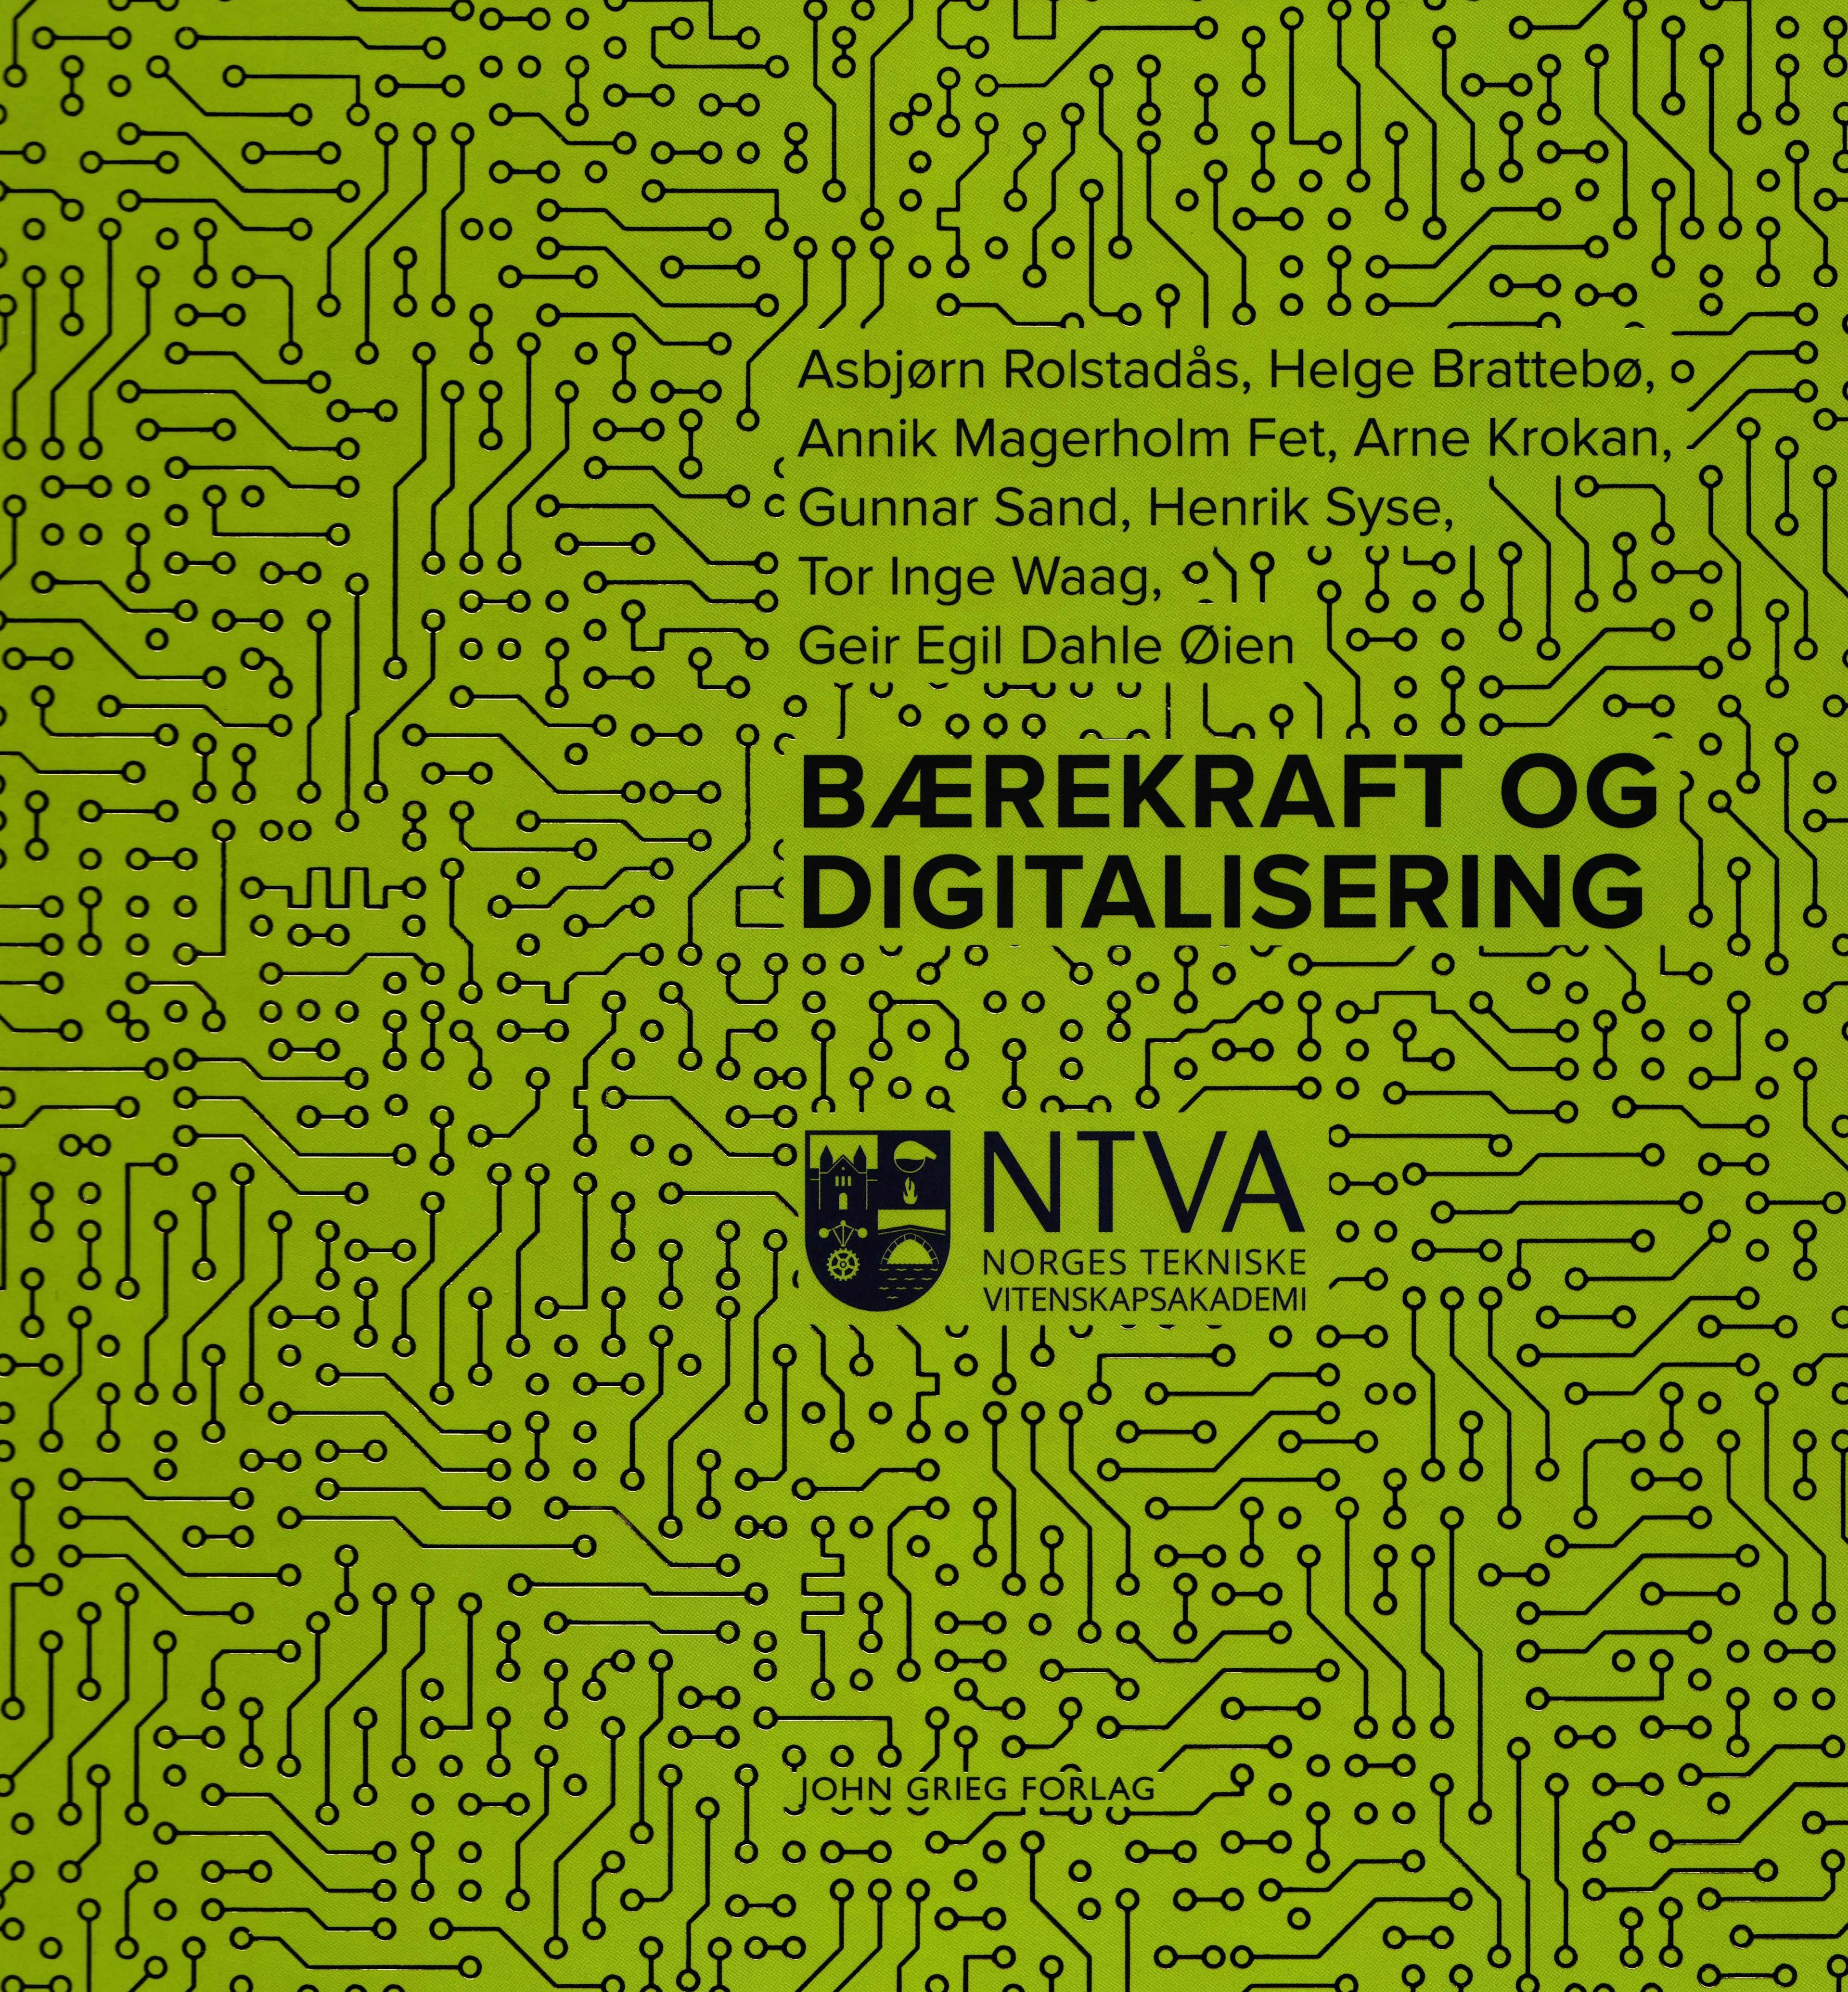 Picture of Bærekraft og digitalisering